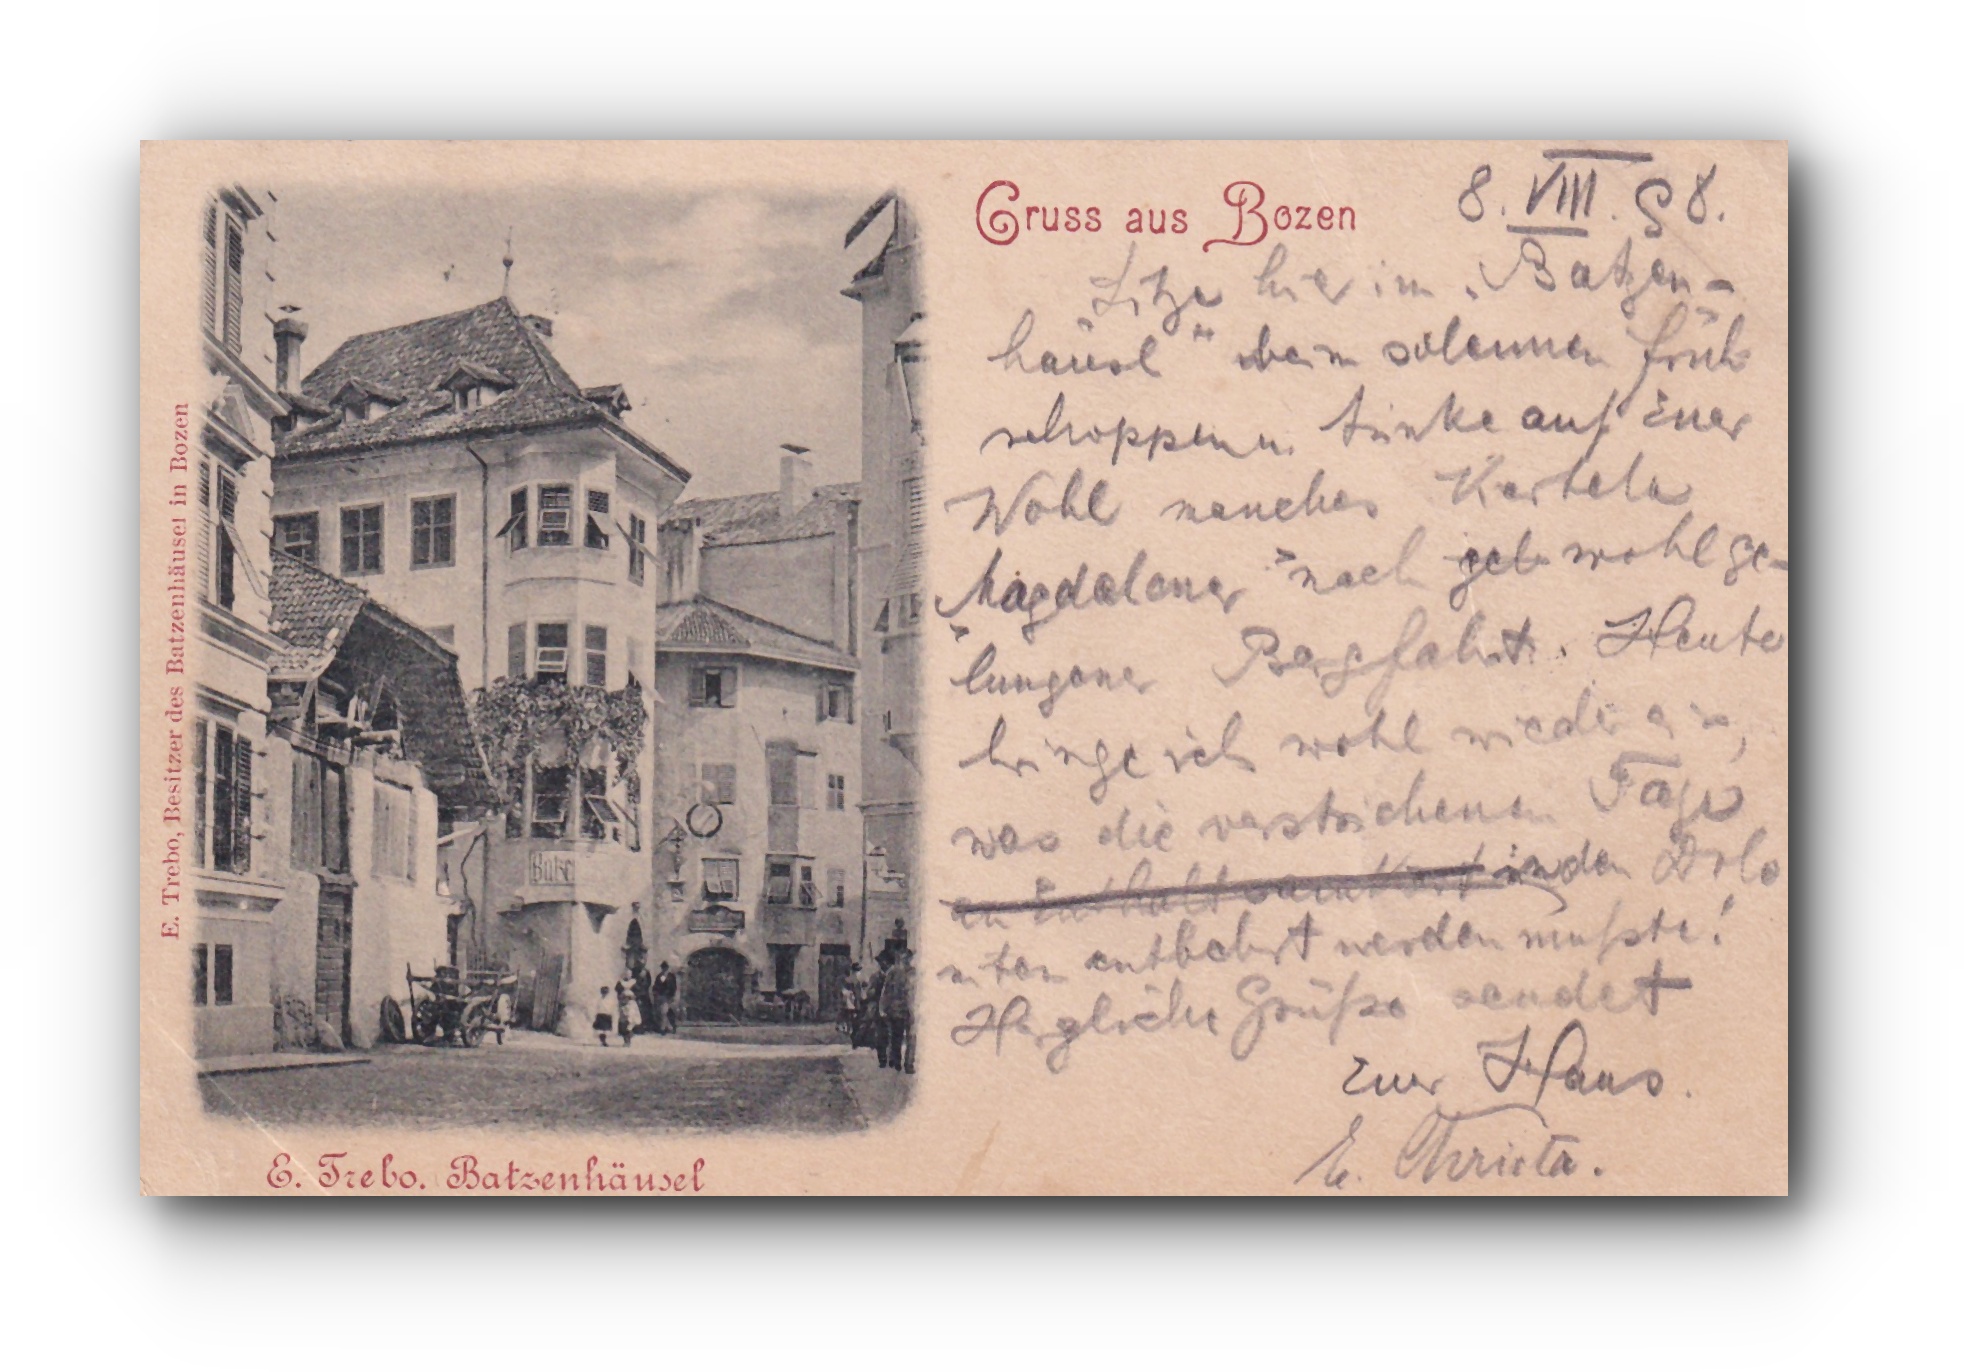 - Gruss aus BOZEN - 08.08.1898 -